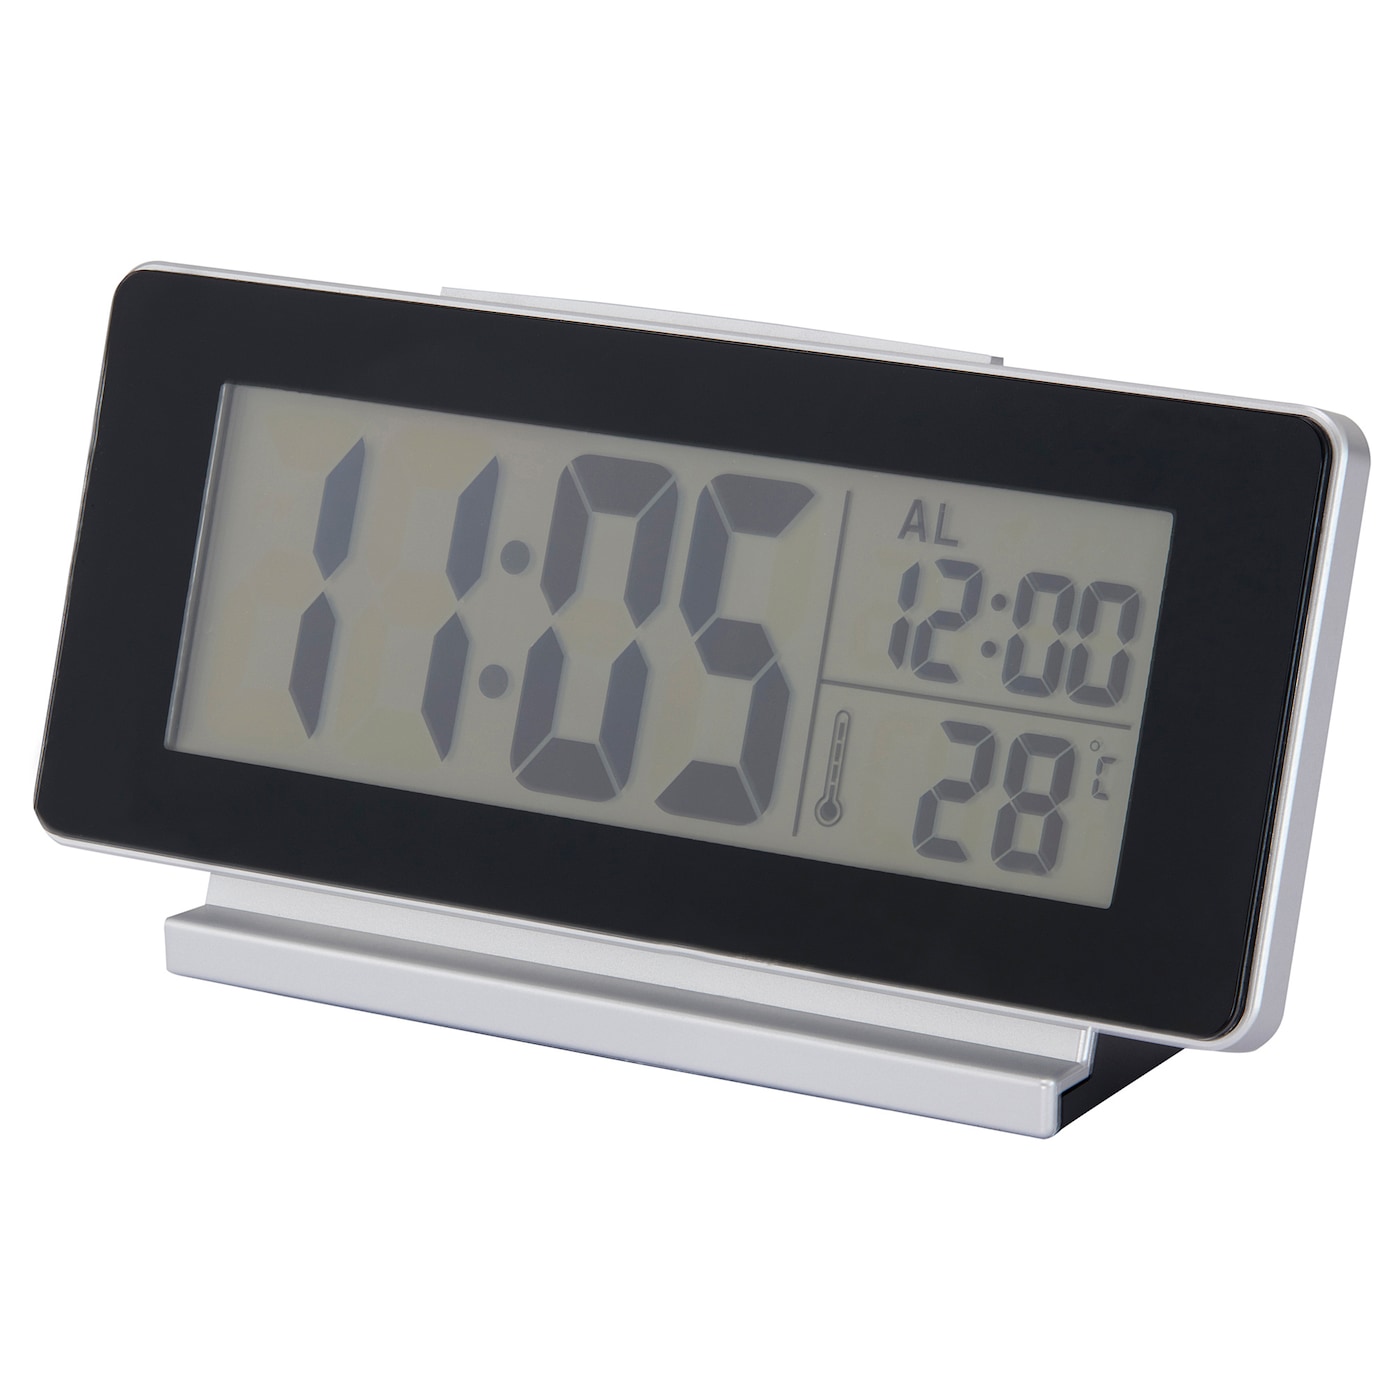 FILMIS Часы/термометр/будильник, низкое напряжение/черный, 16,5x9 см IKEA часы lexibook будильник проектор тачки